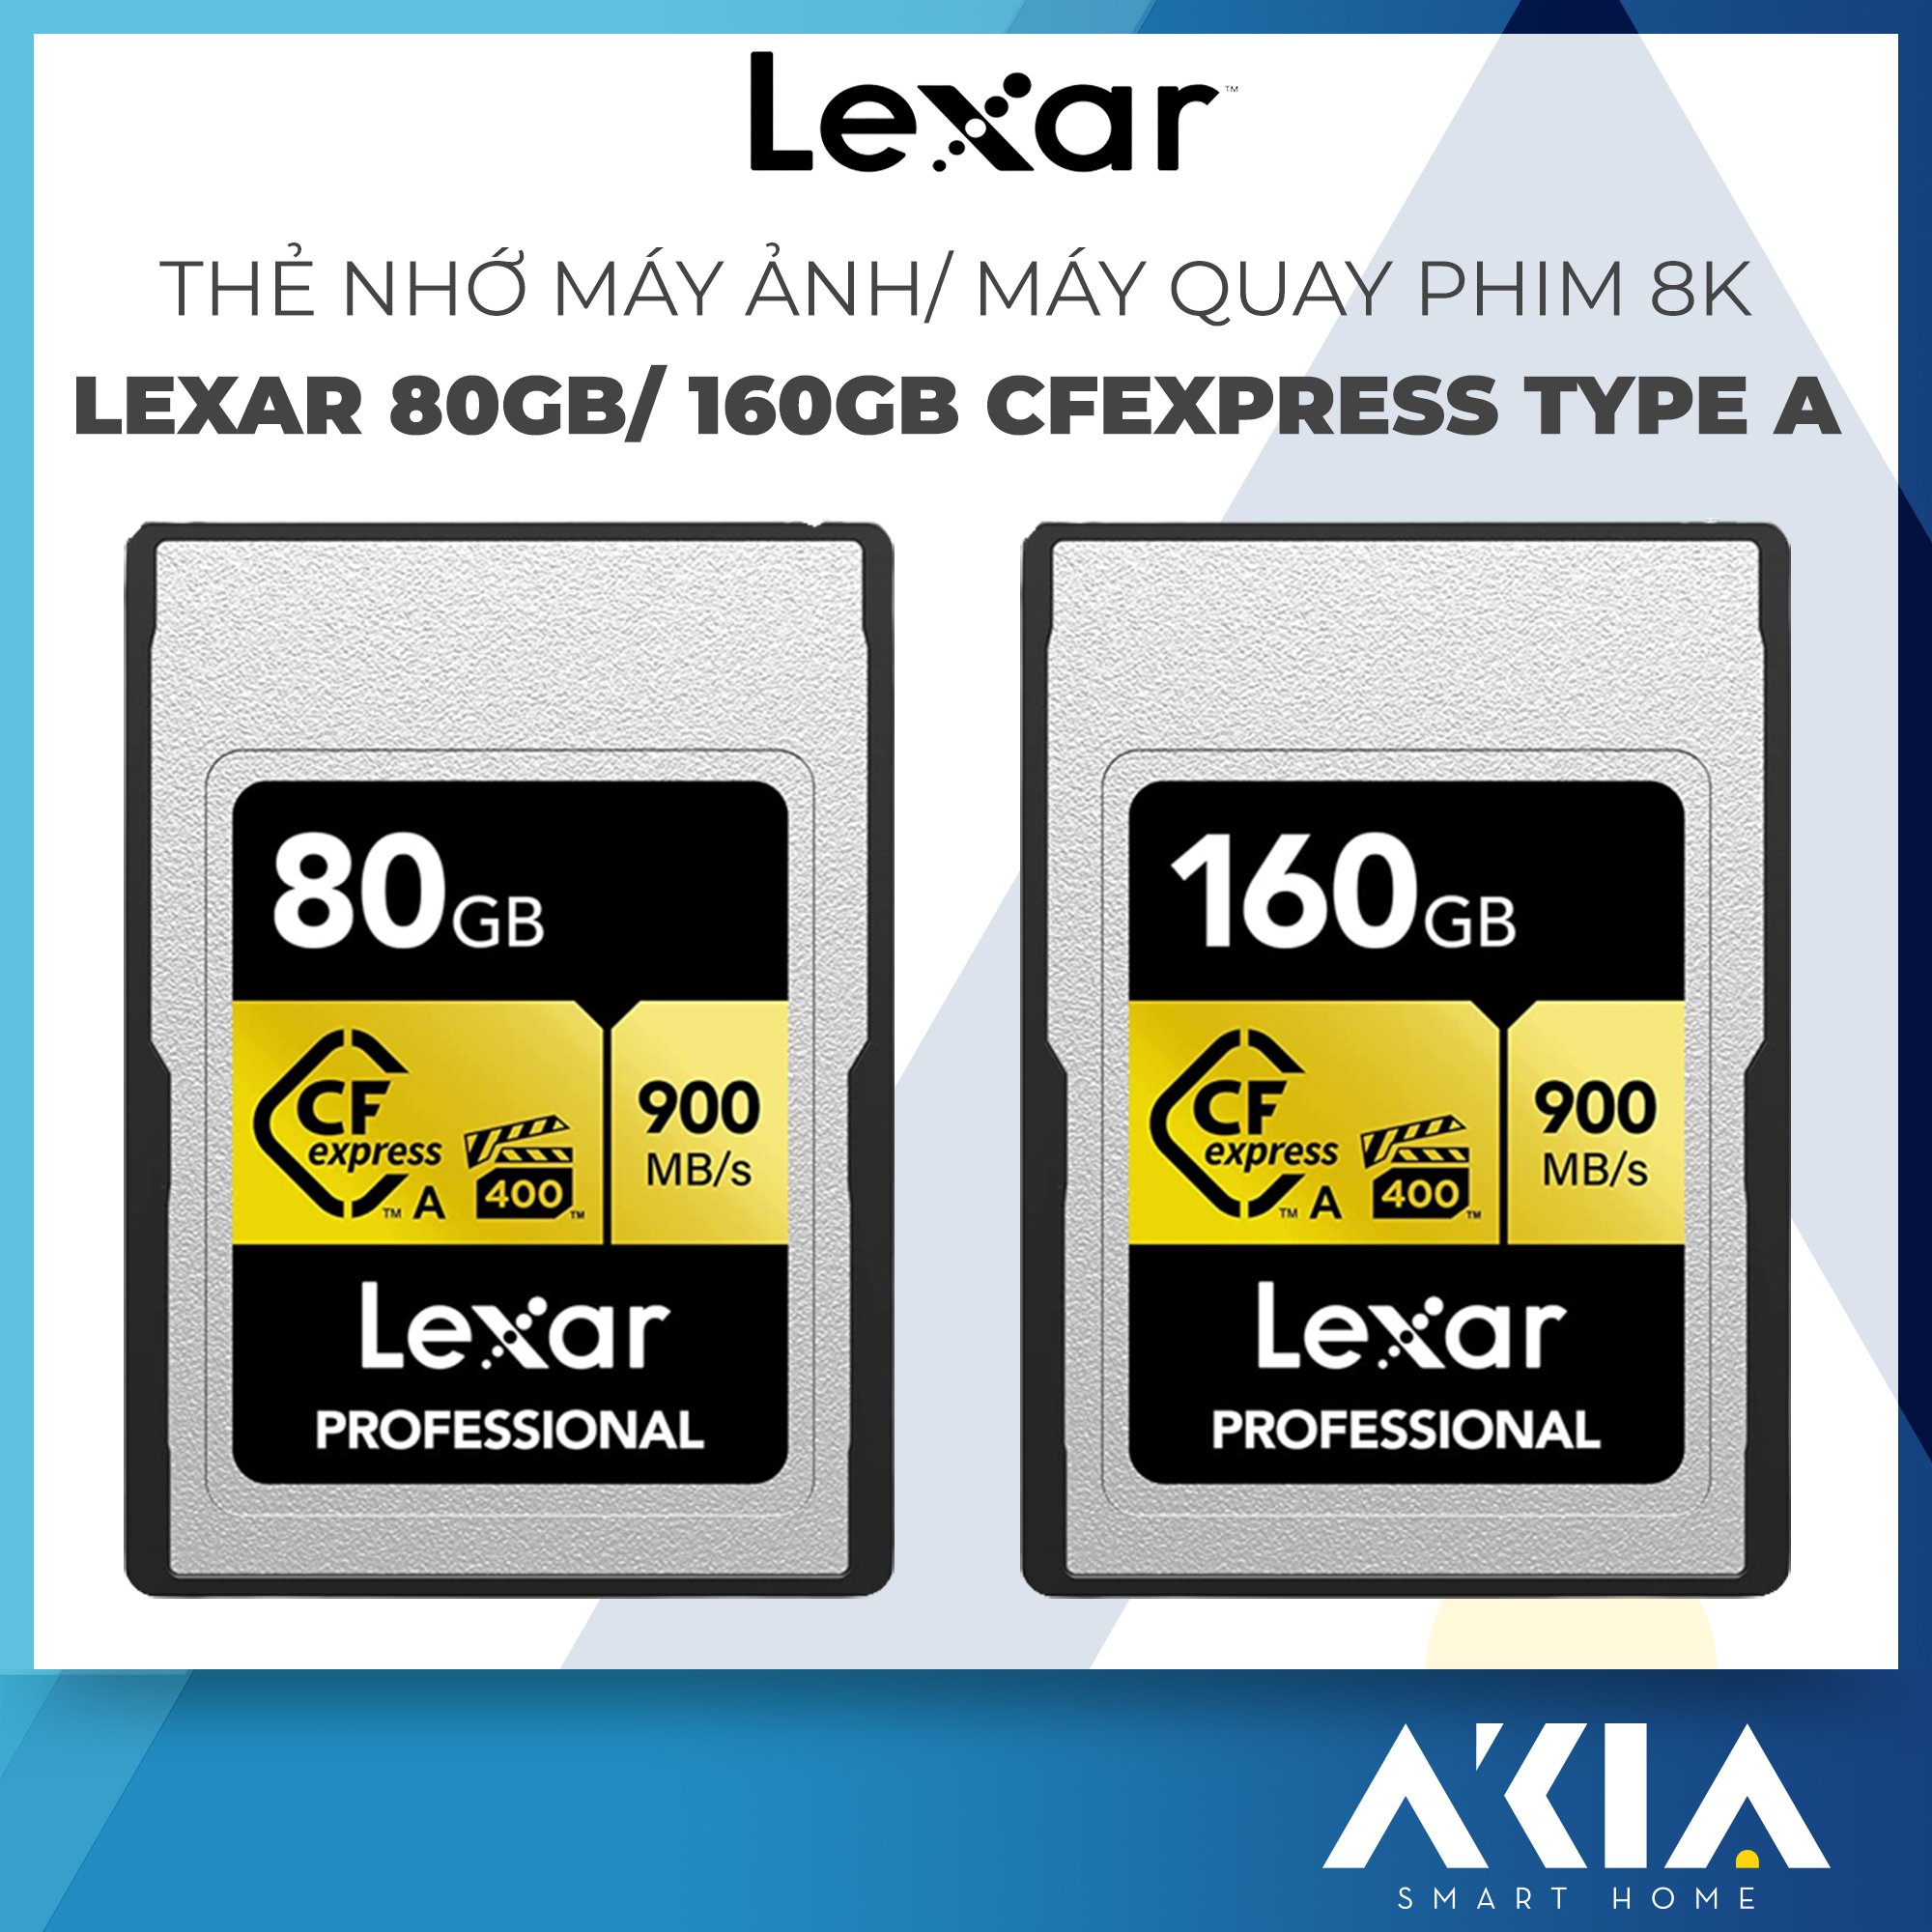 Thẻ nhớ máy ảnh/ máy quay phim chuyên nghiệp Lexar 80GB/ 160GB CFexpress Type A, video chất lượng cao 8K,...